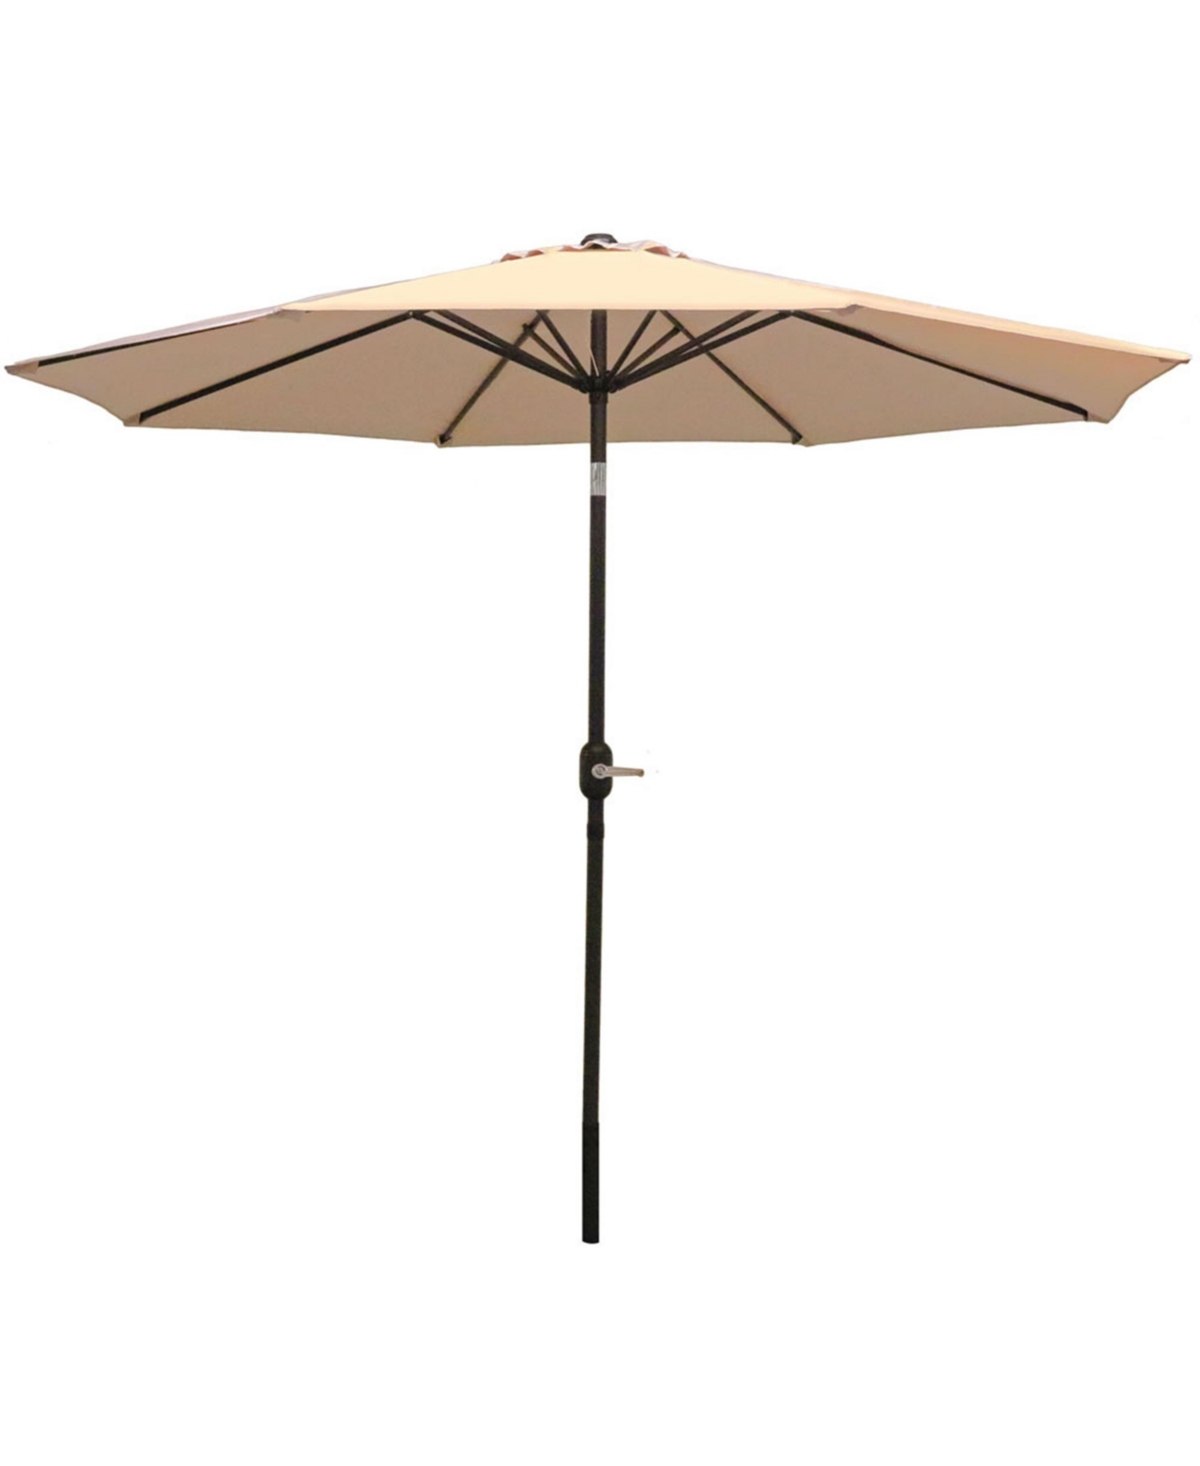 9 ft Aluminum Patio Umbrella with Tilt and Crank - Beige - Cream